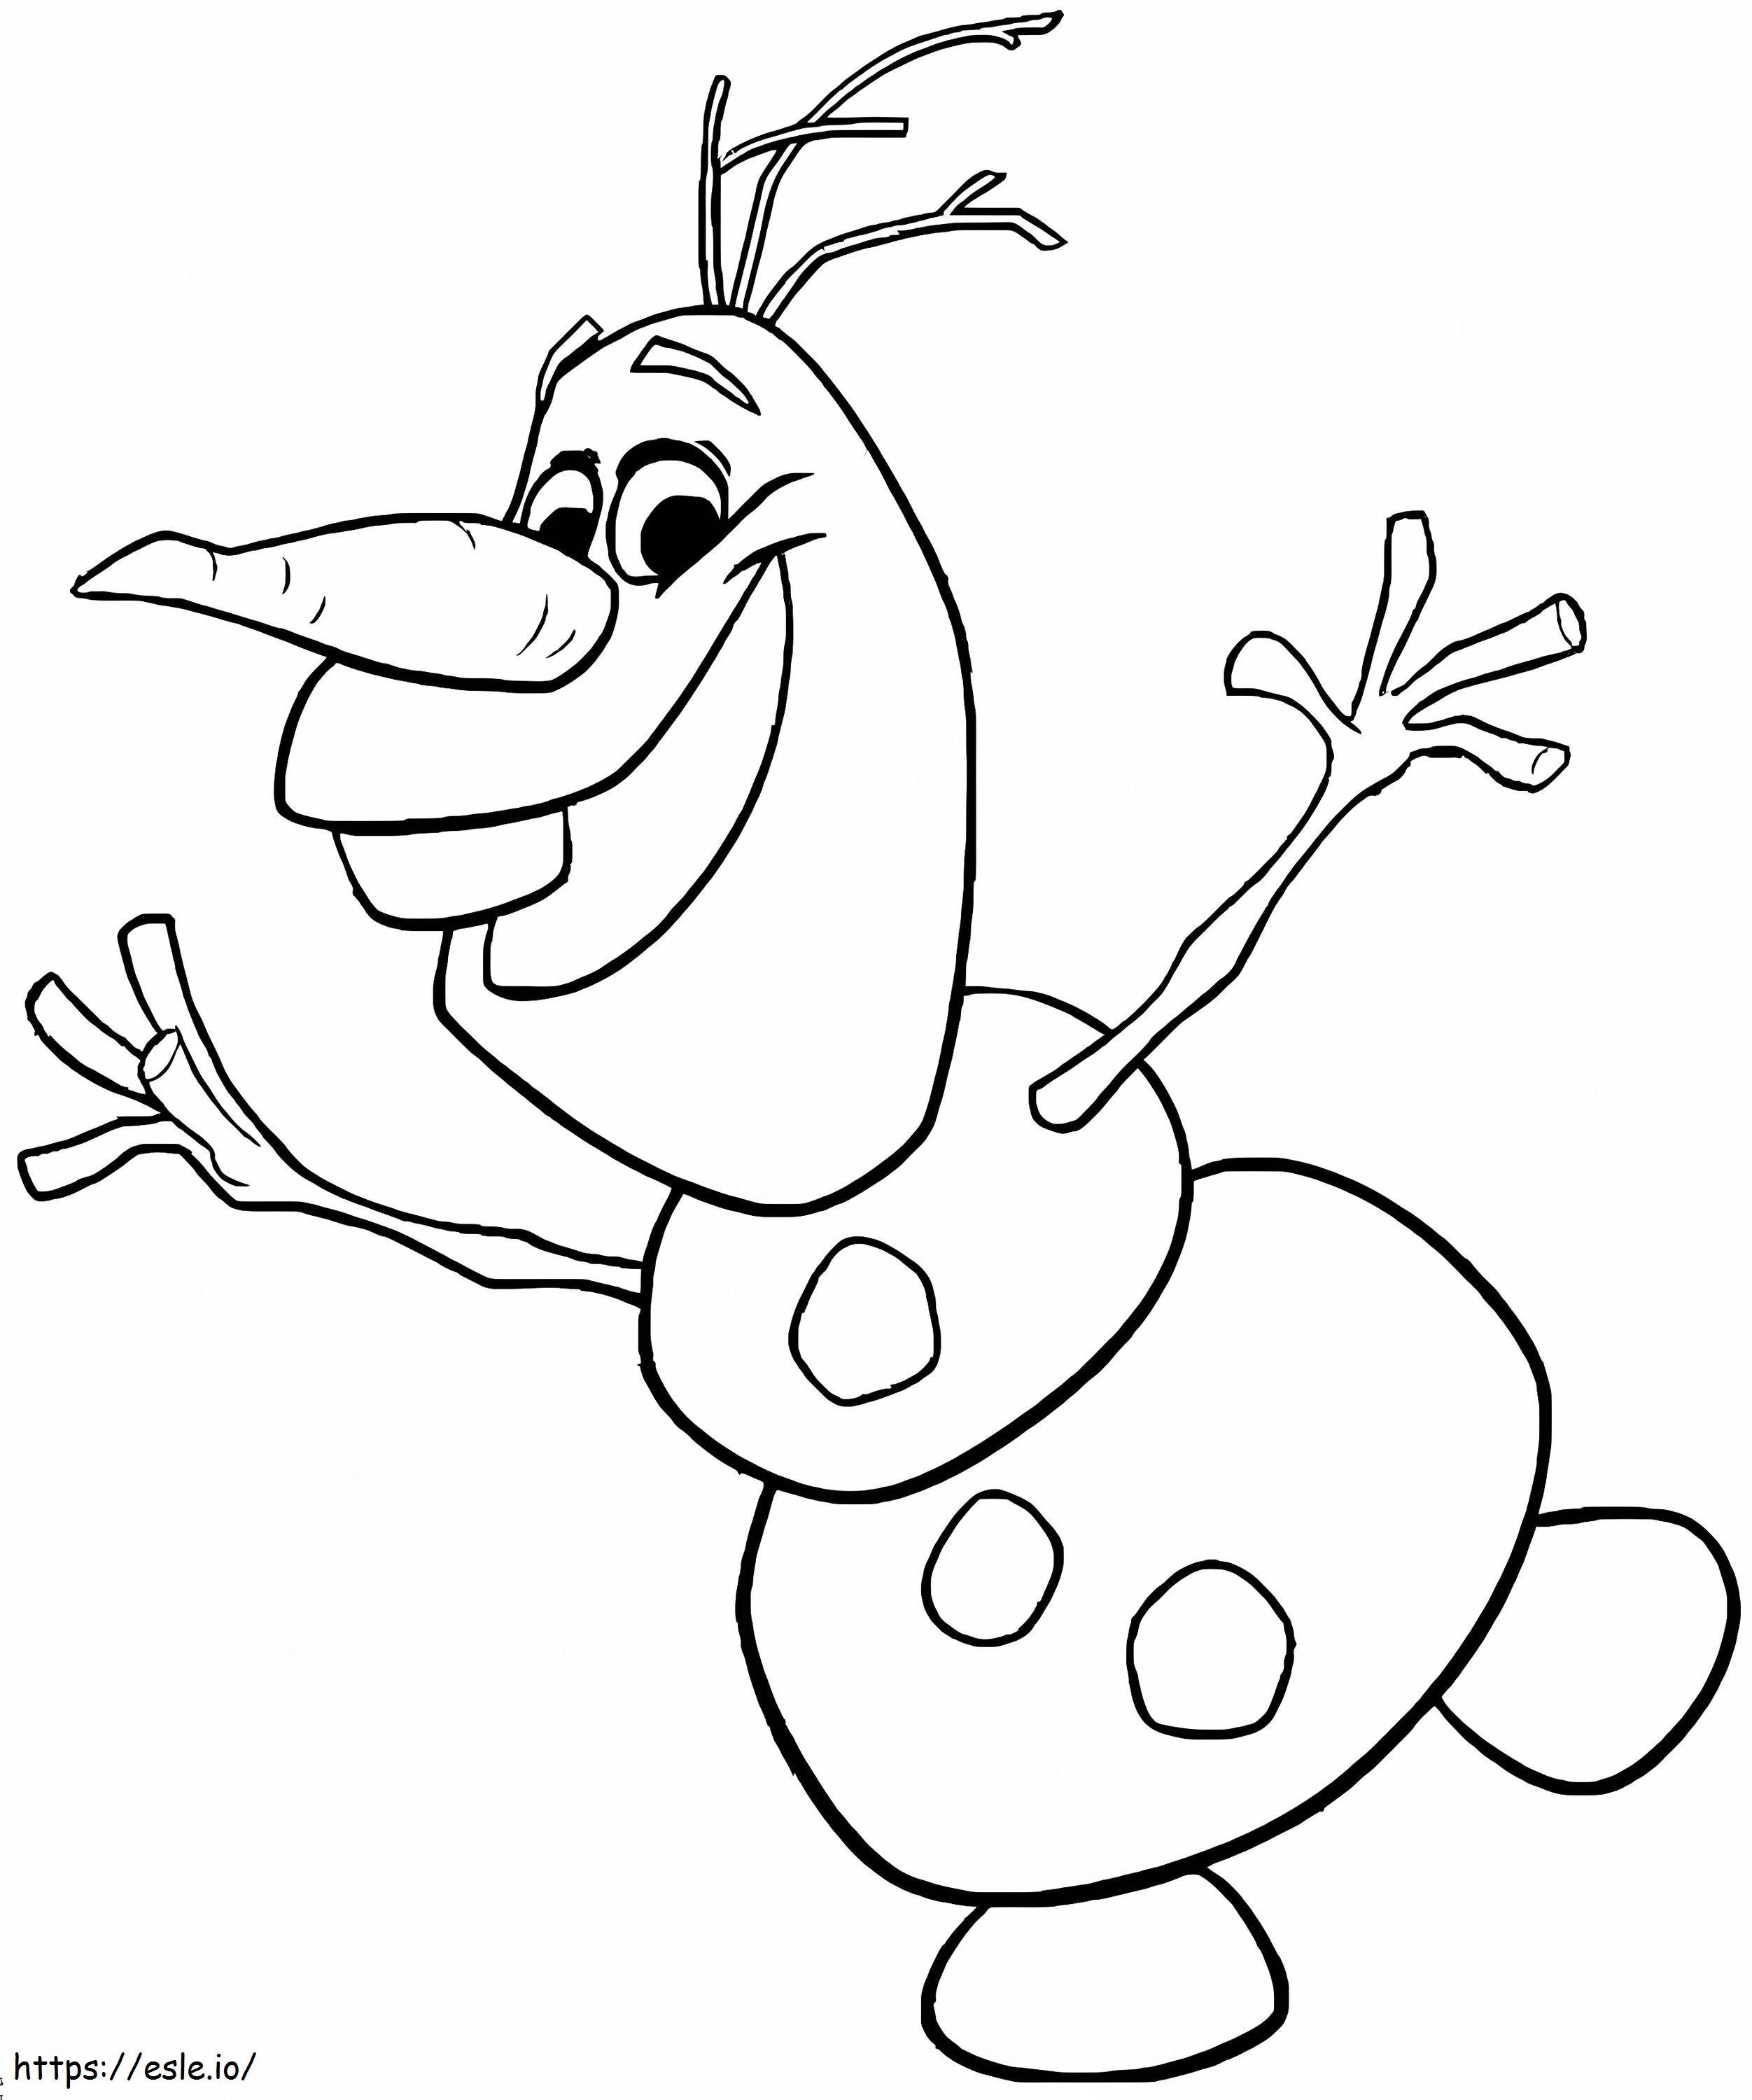 Coloriage Joyeux Olaf à imprimer dessin